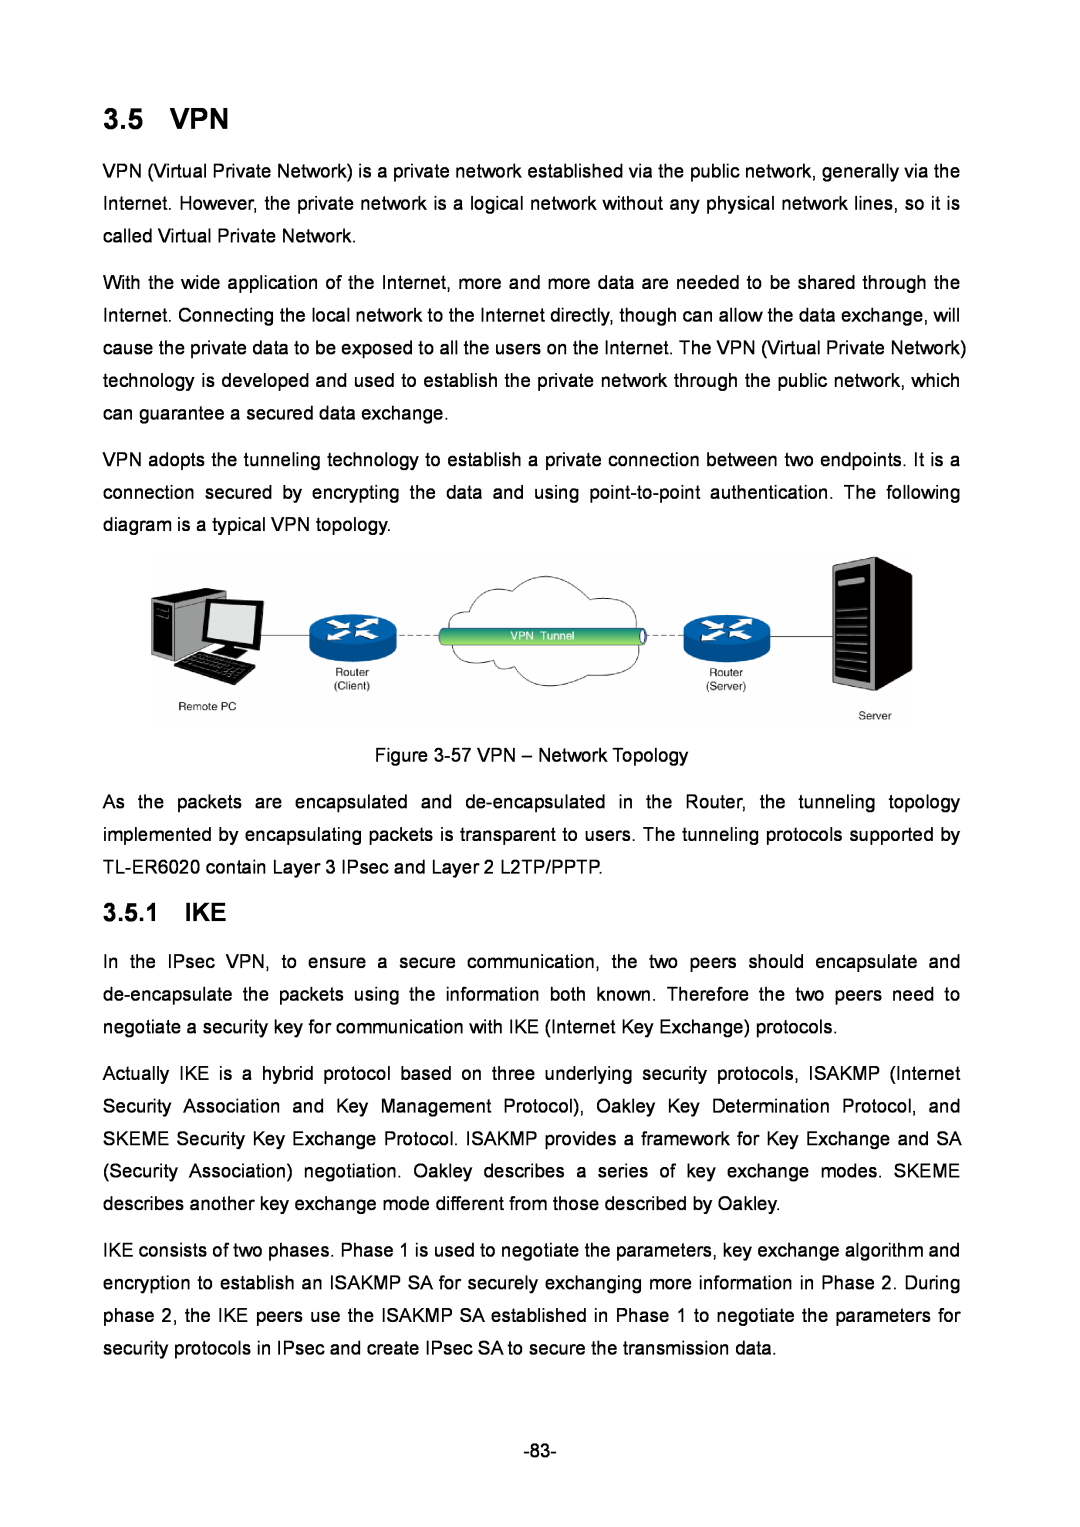 TP-Link TL-ER6020 manual 3.5 VPN, 3.5.1 IKE 